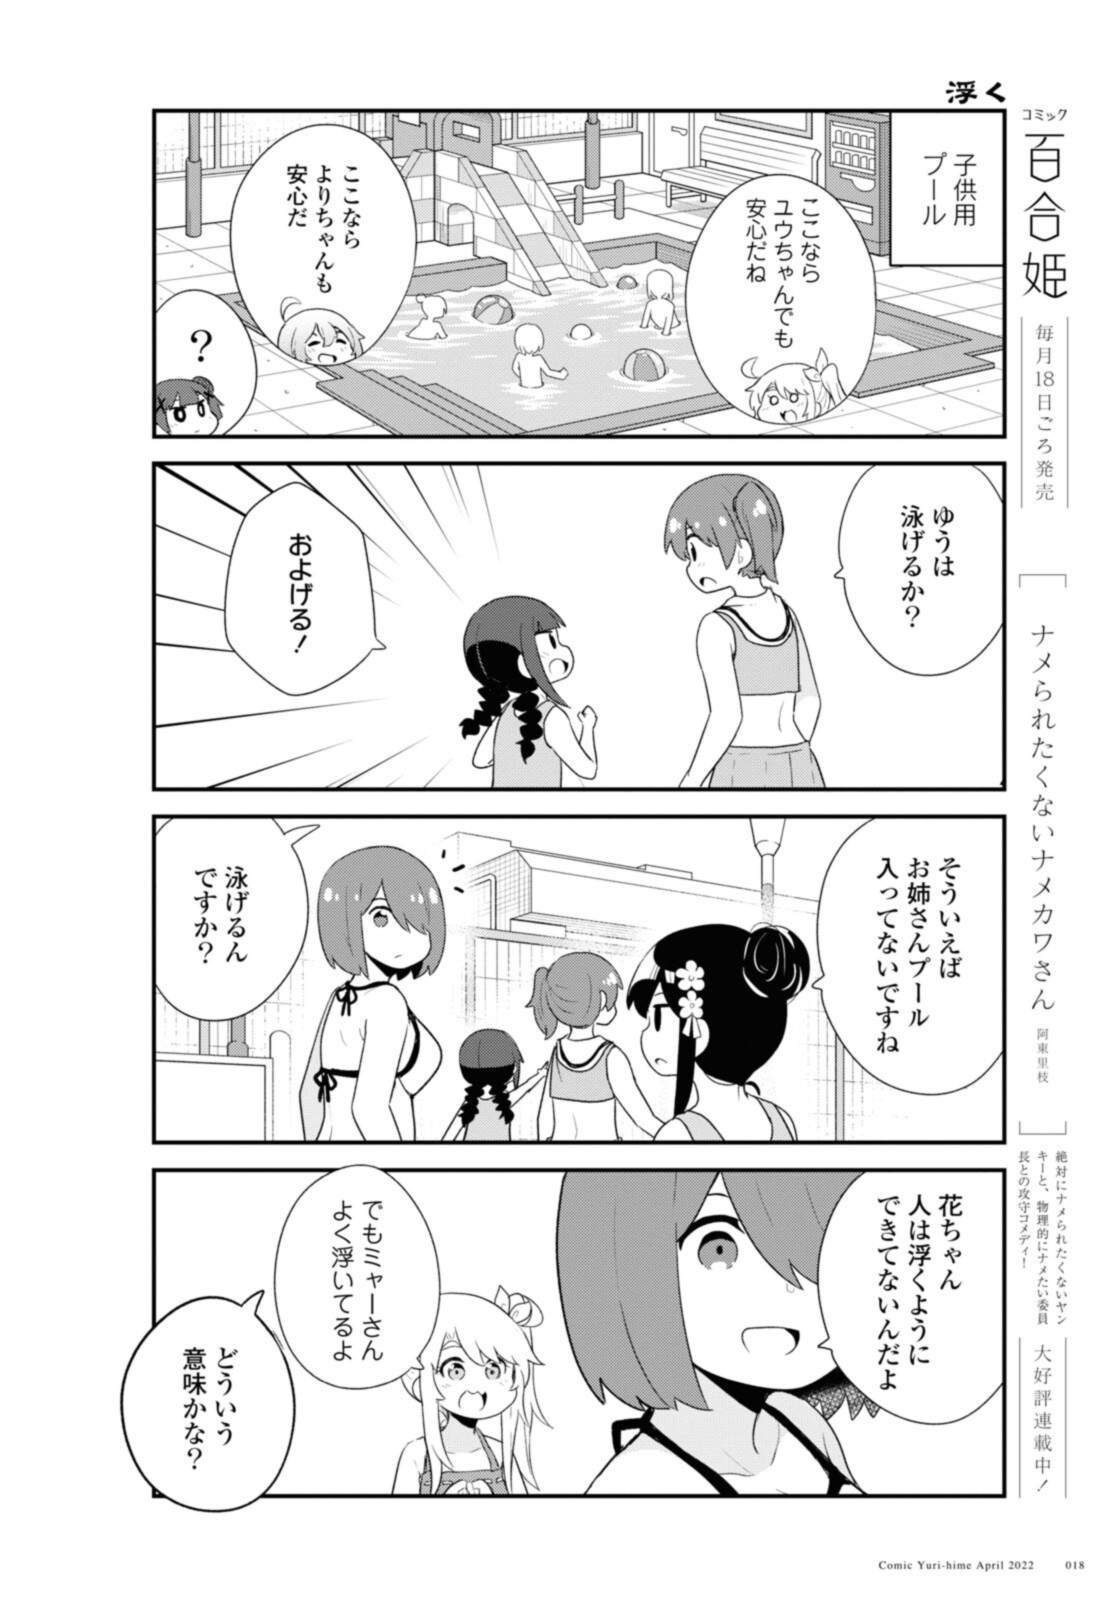 Watashi ni Tenshi ga Maiorita! - Chapter 94.2 - Page 4